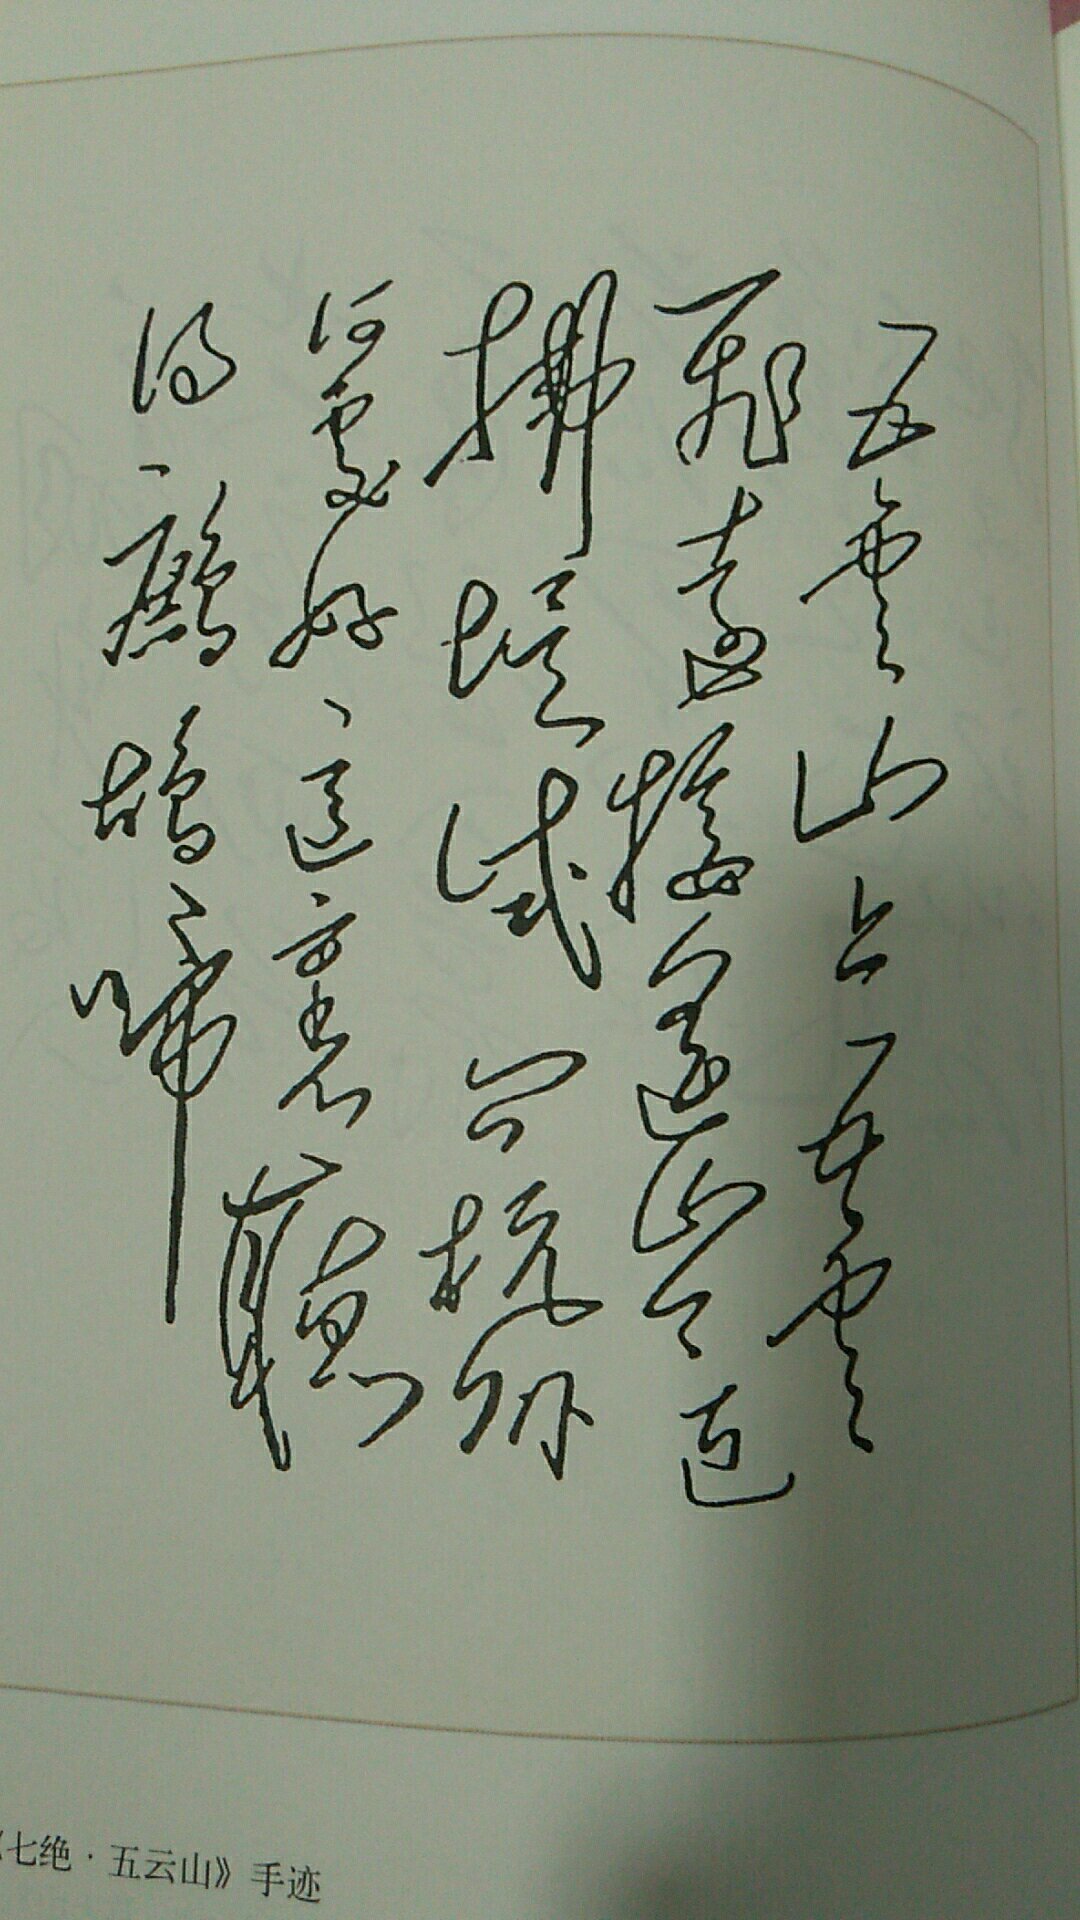 收录毛泽东诗词最多最全的版本，对初版进行了全面修订，增补了简要解释，增加了串讲。